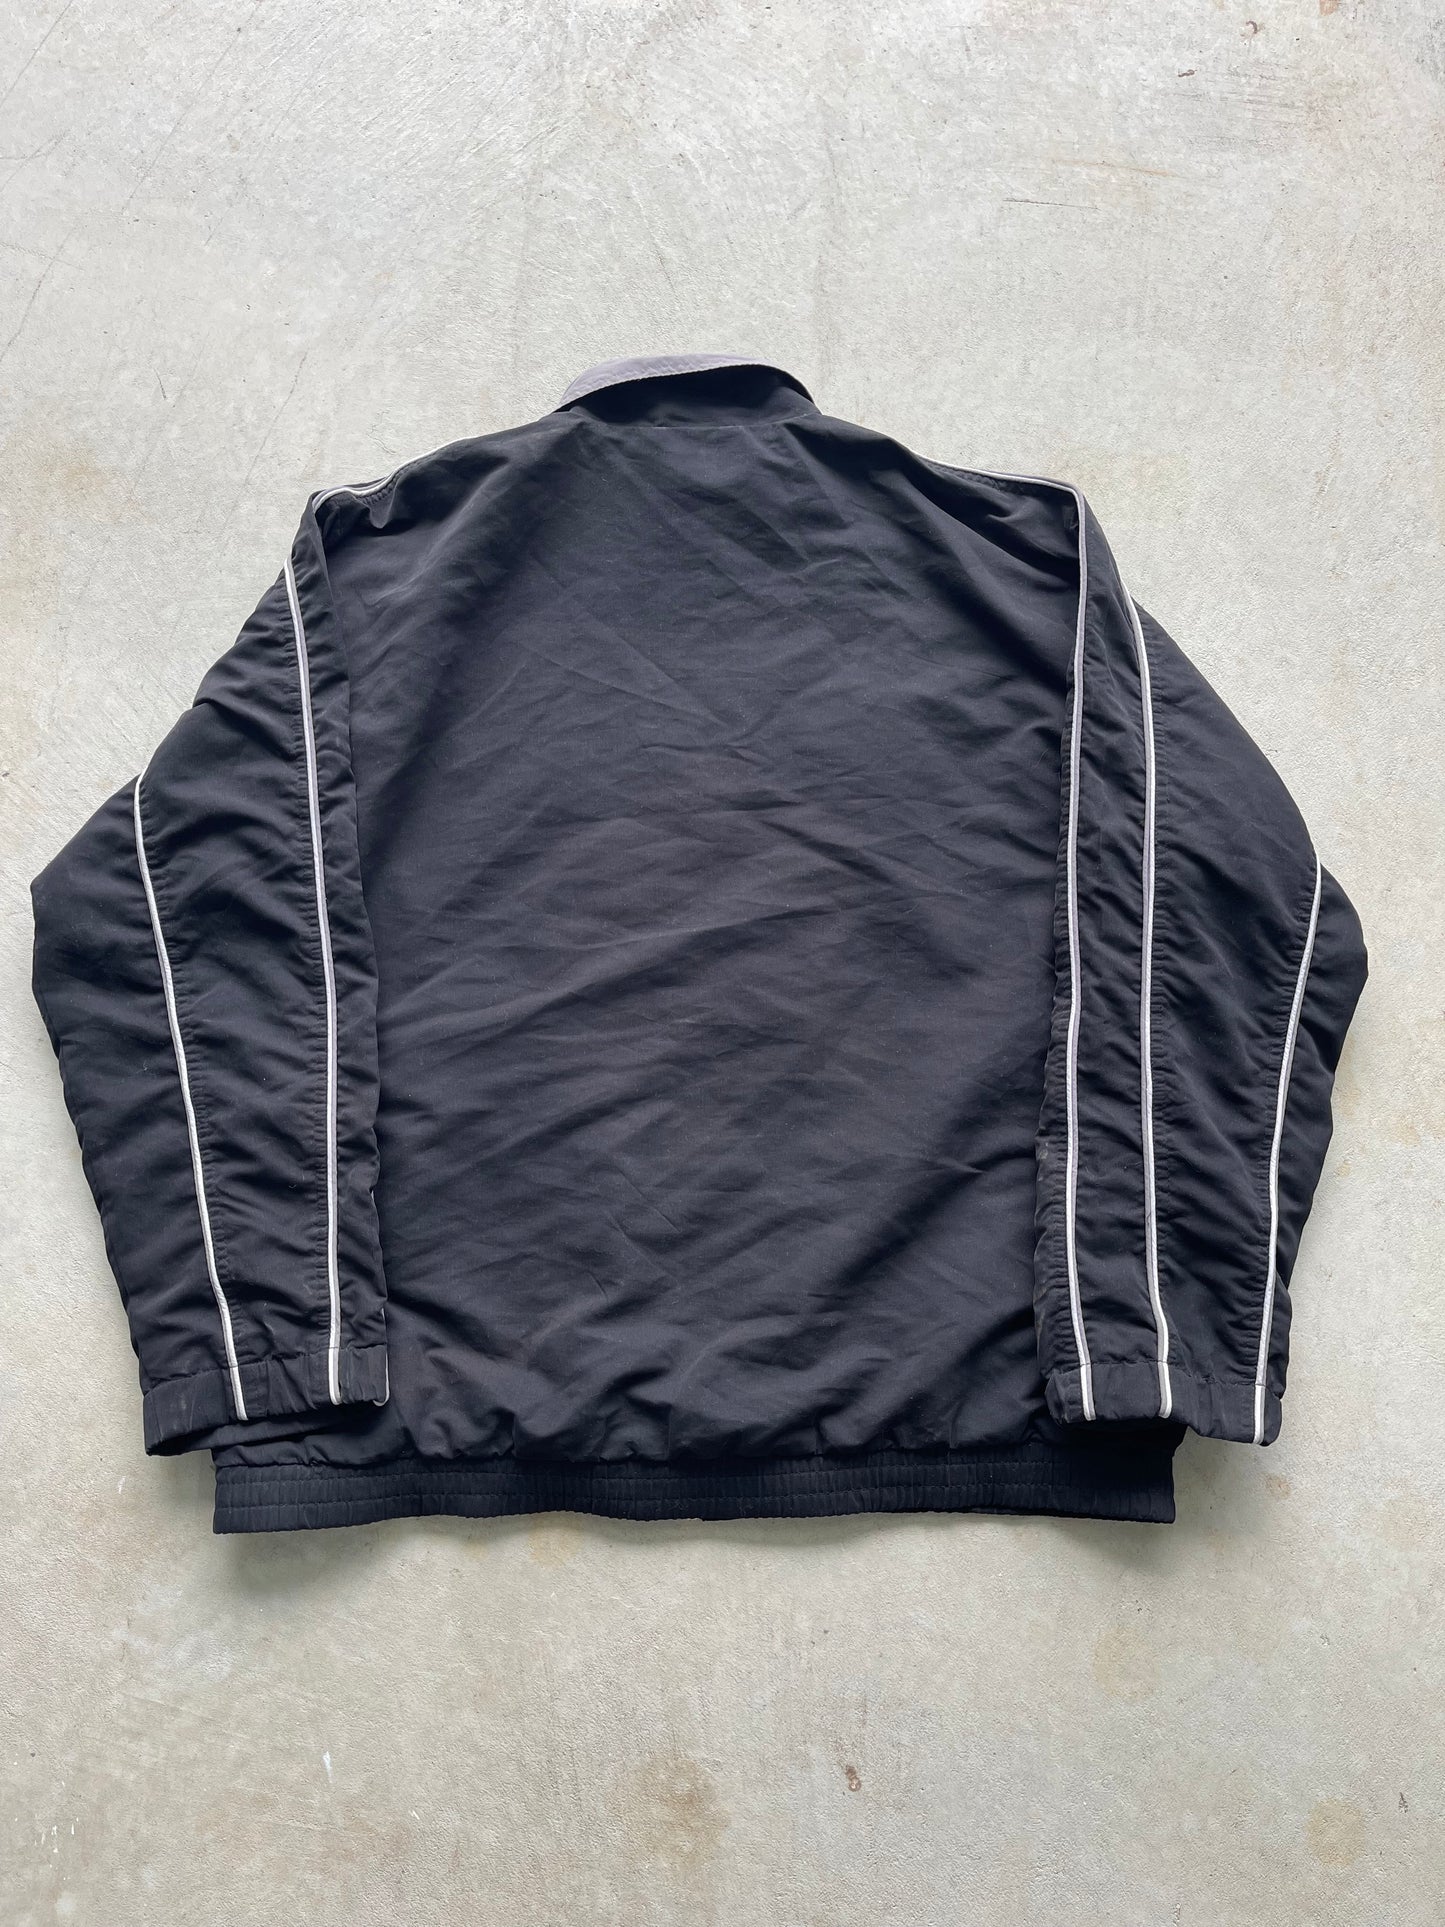 Vintage Slazenger Jacket (L)